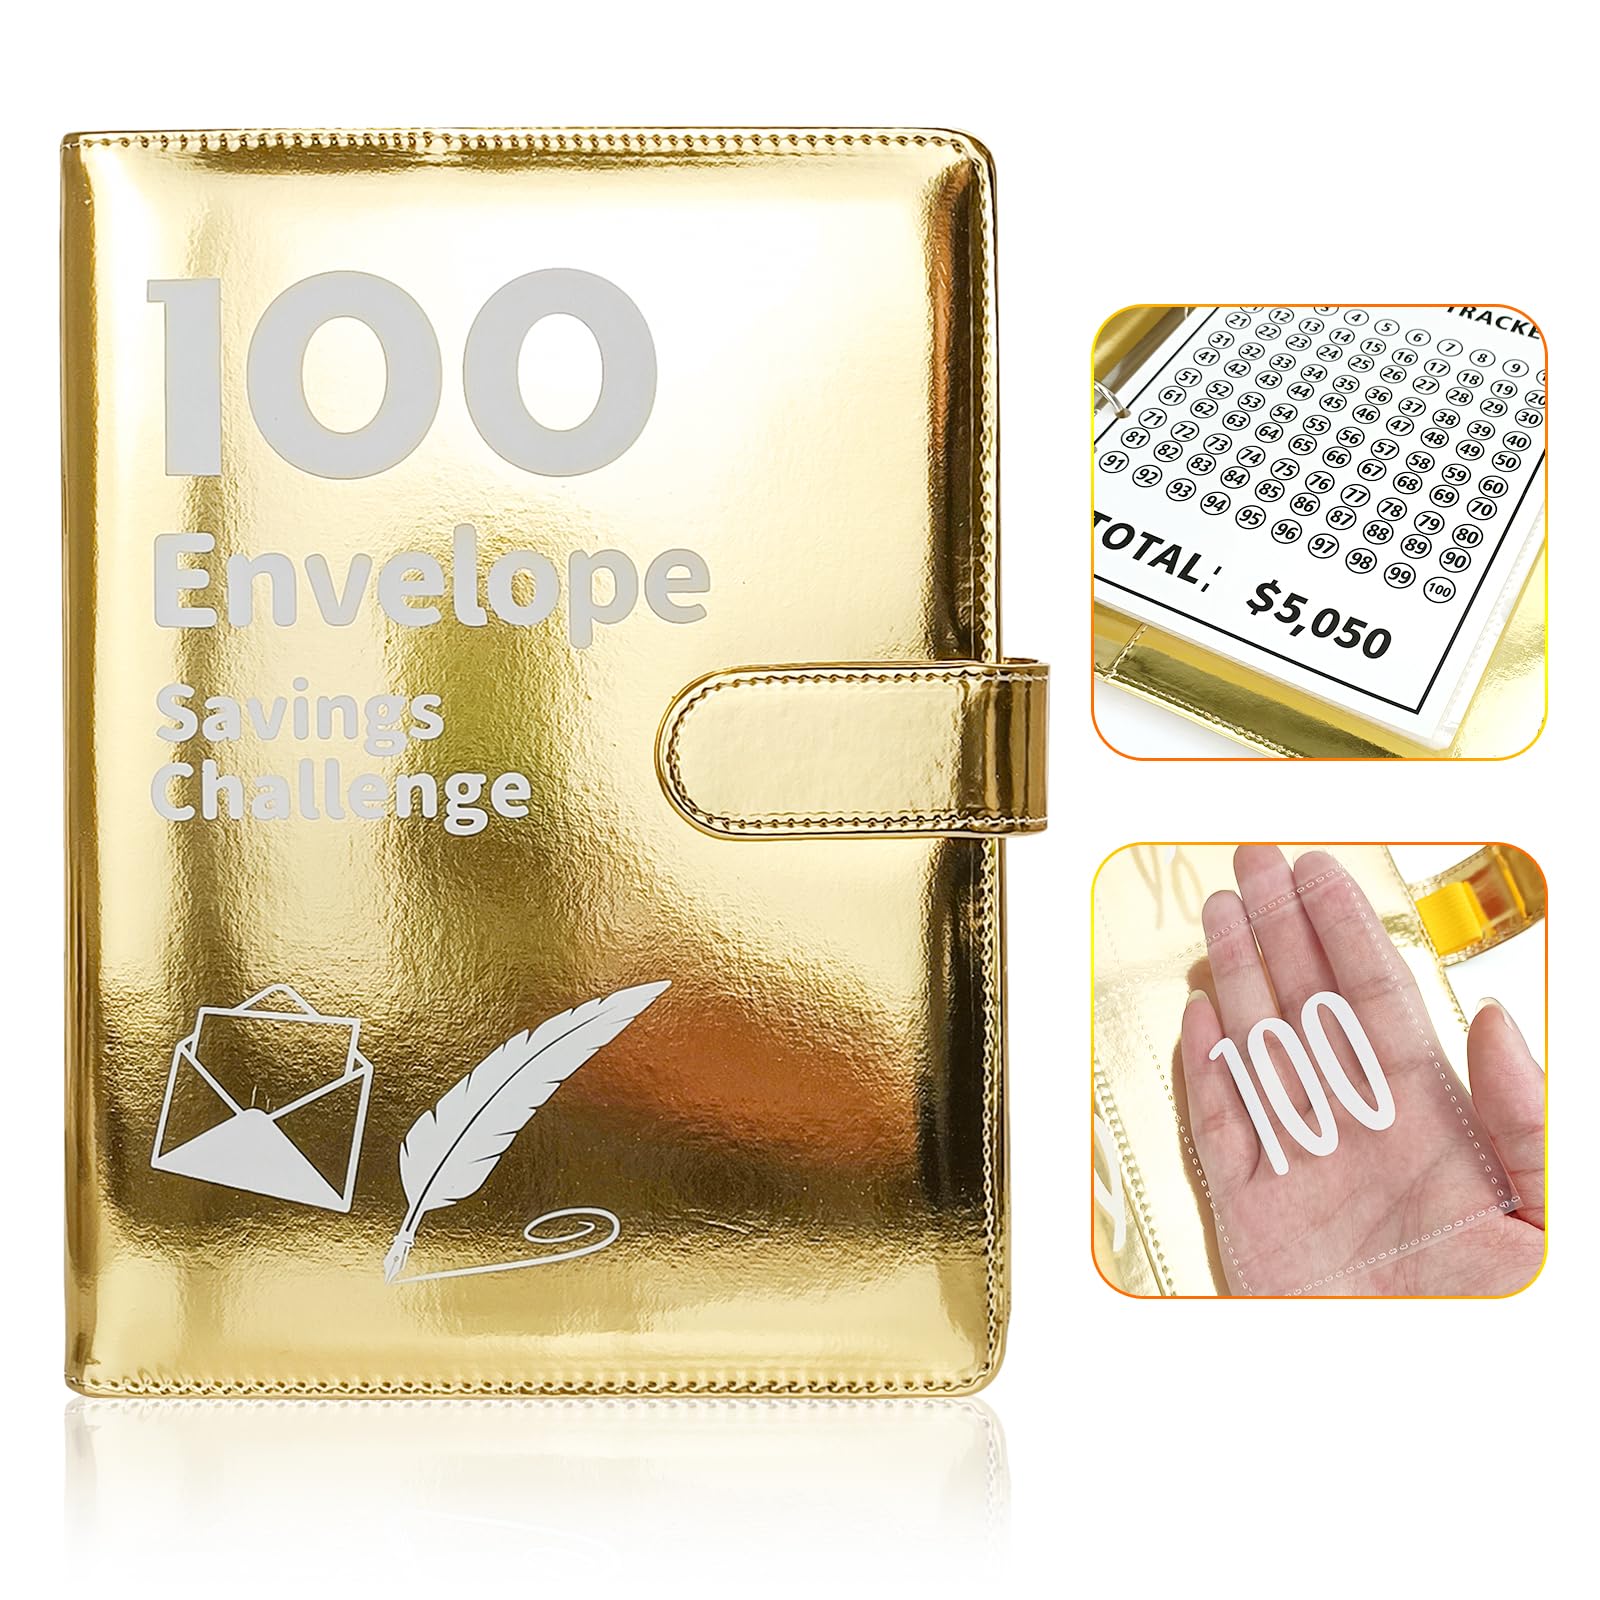 [Upgraded version]100 Envelope Saving Challenge Binder-And Fun Way To